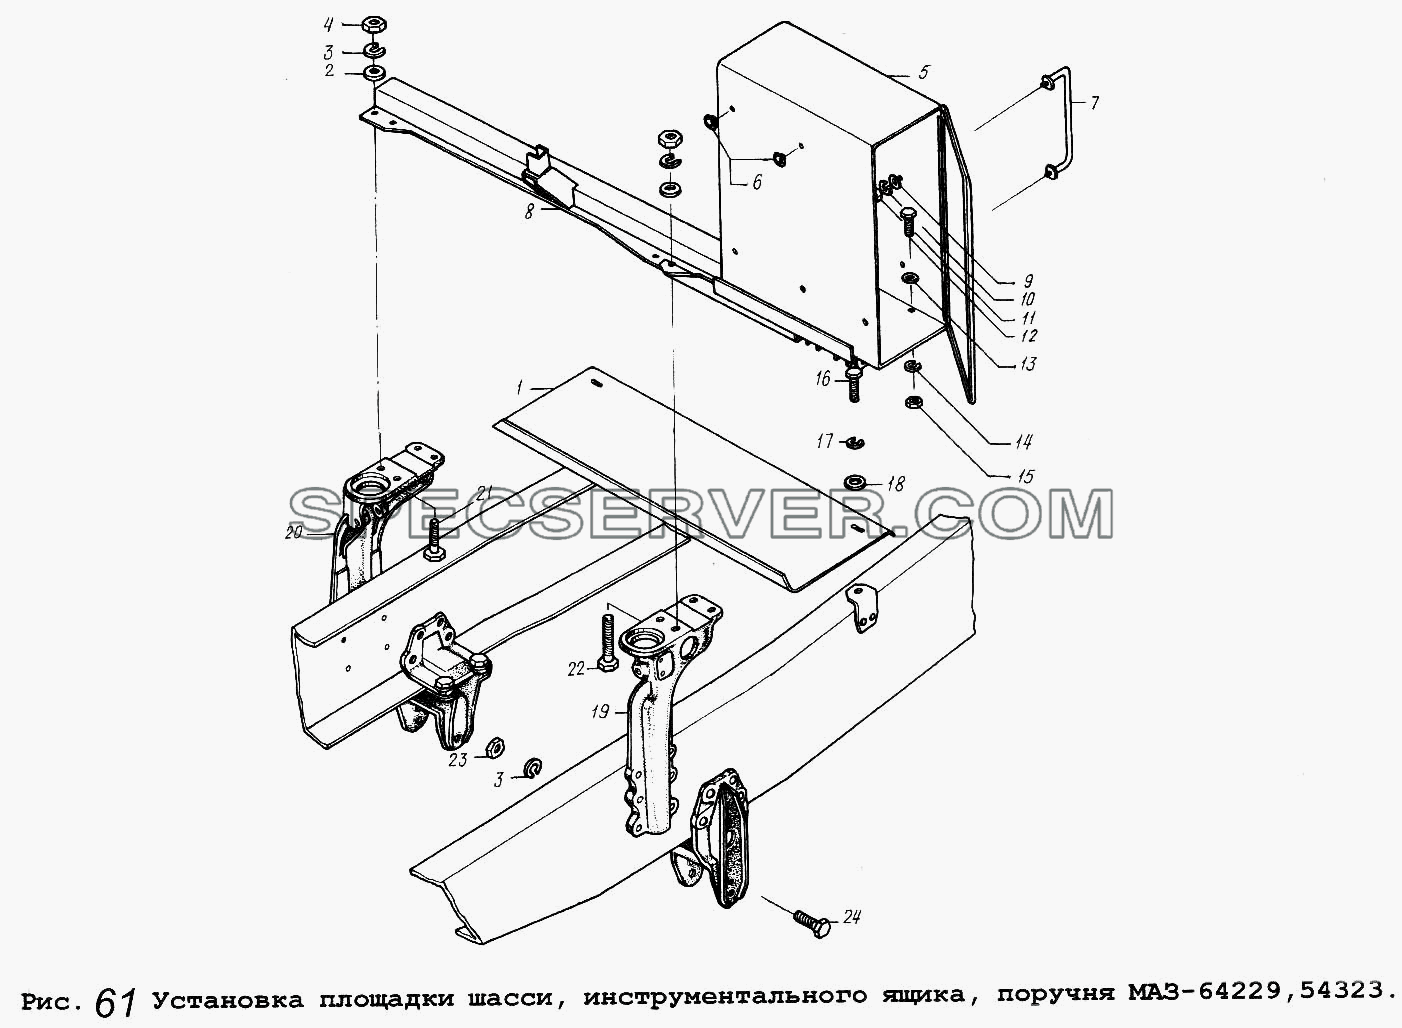 Установка площадки шасси, инструментального ящика, поручня МАЗ-64229,54323 для МАЗ-64229 (список запасных частей)